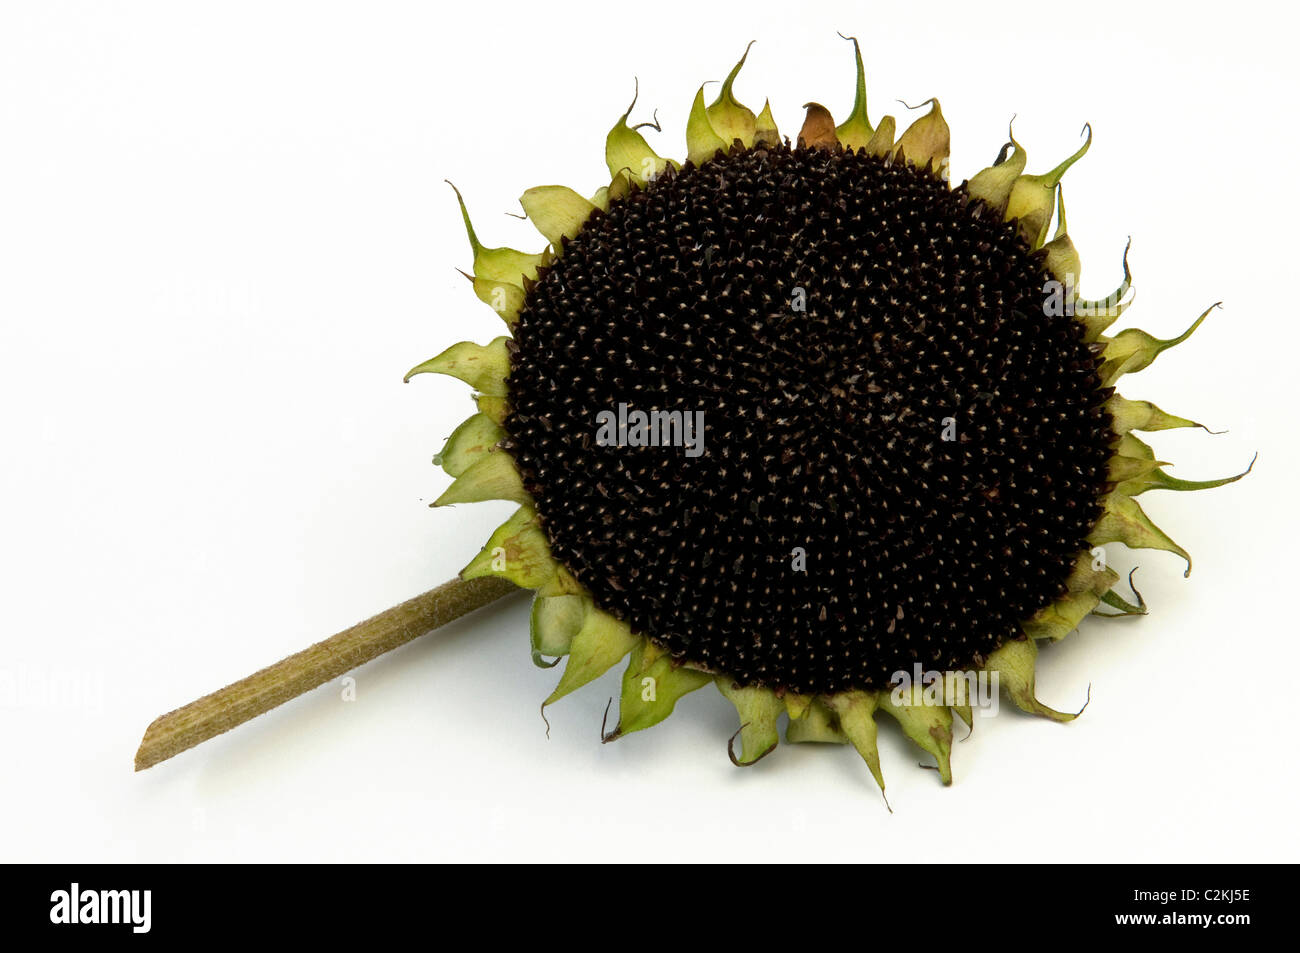 Sonnenblume (Helianthus Annuus). Blütenstand mit unreifen Samen. Studio Bild vor einem weißen Hintergrund. Stockfoto